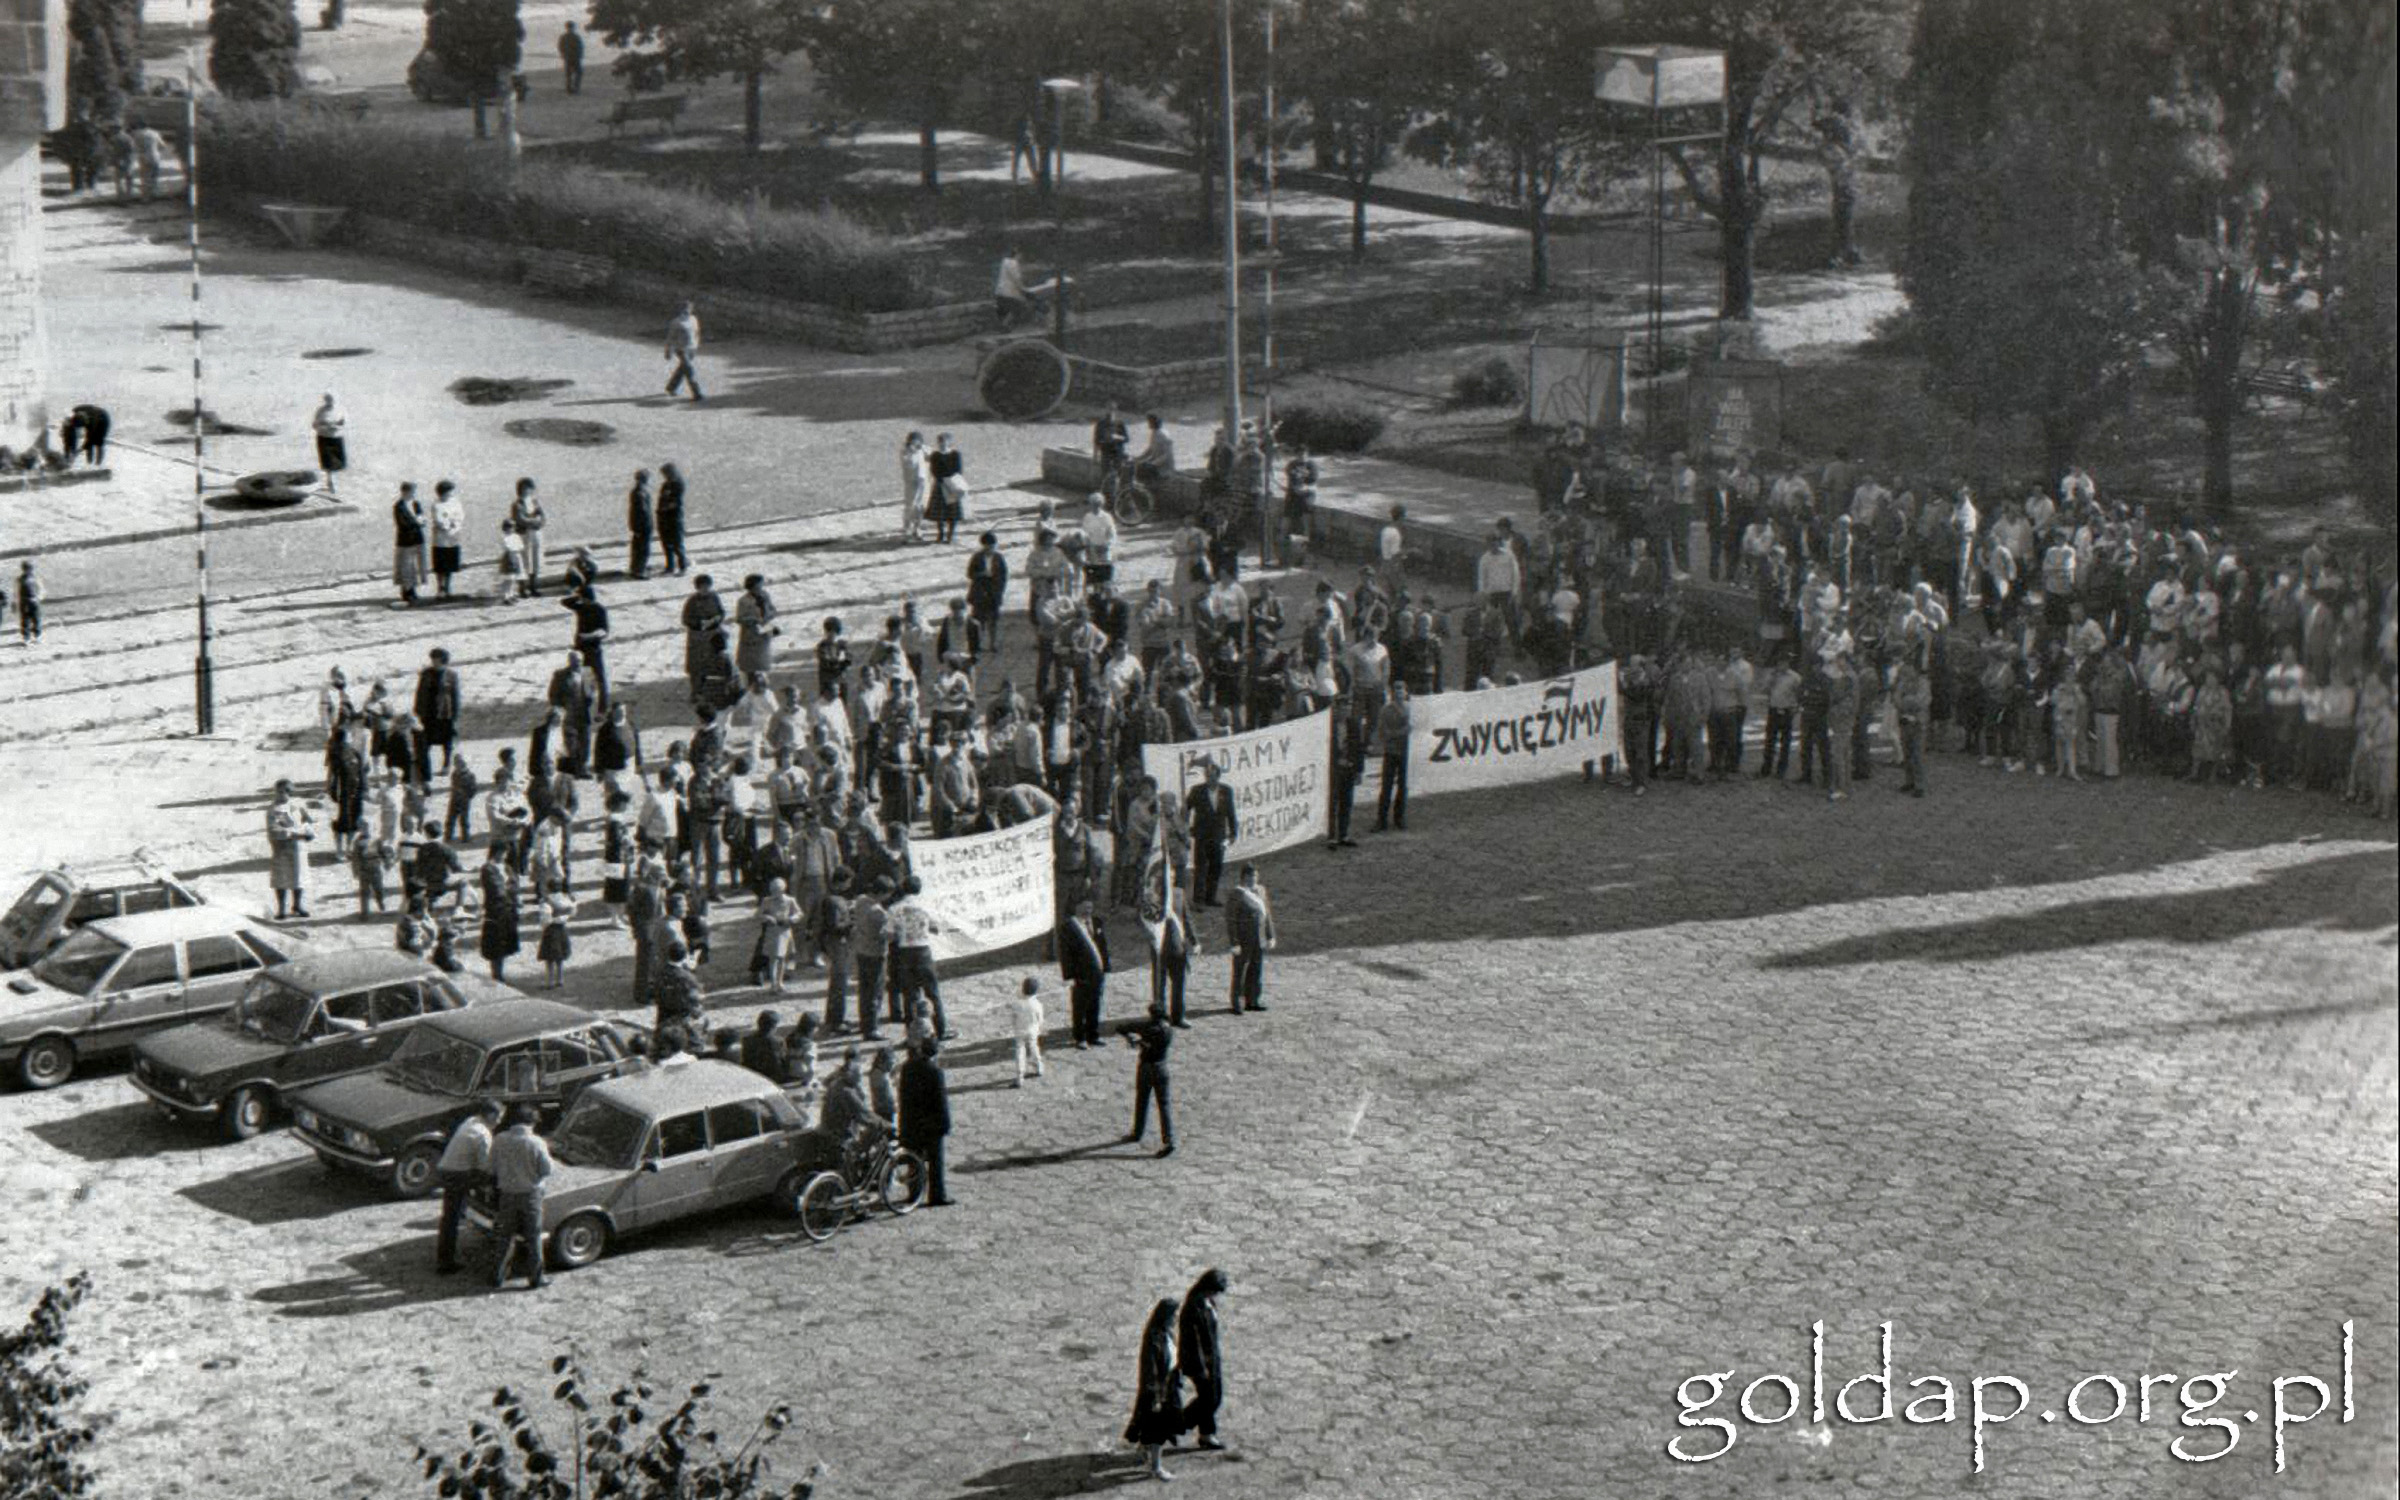 Gołdap plac 1989